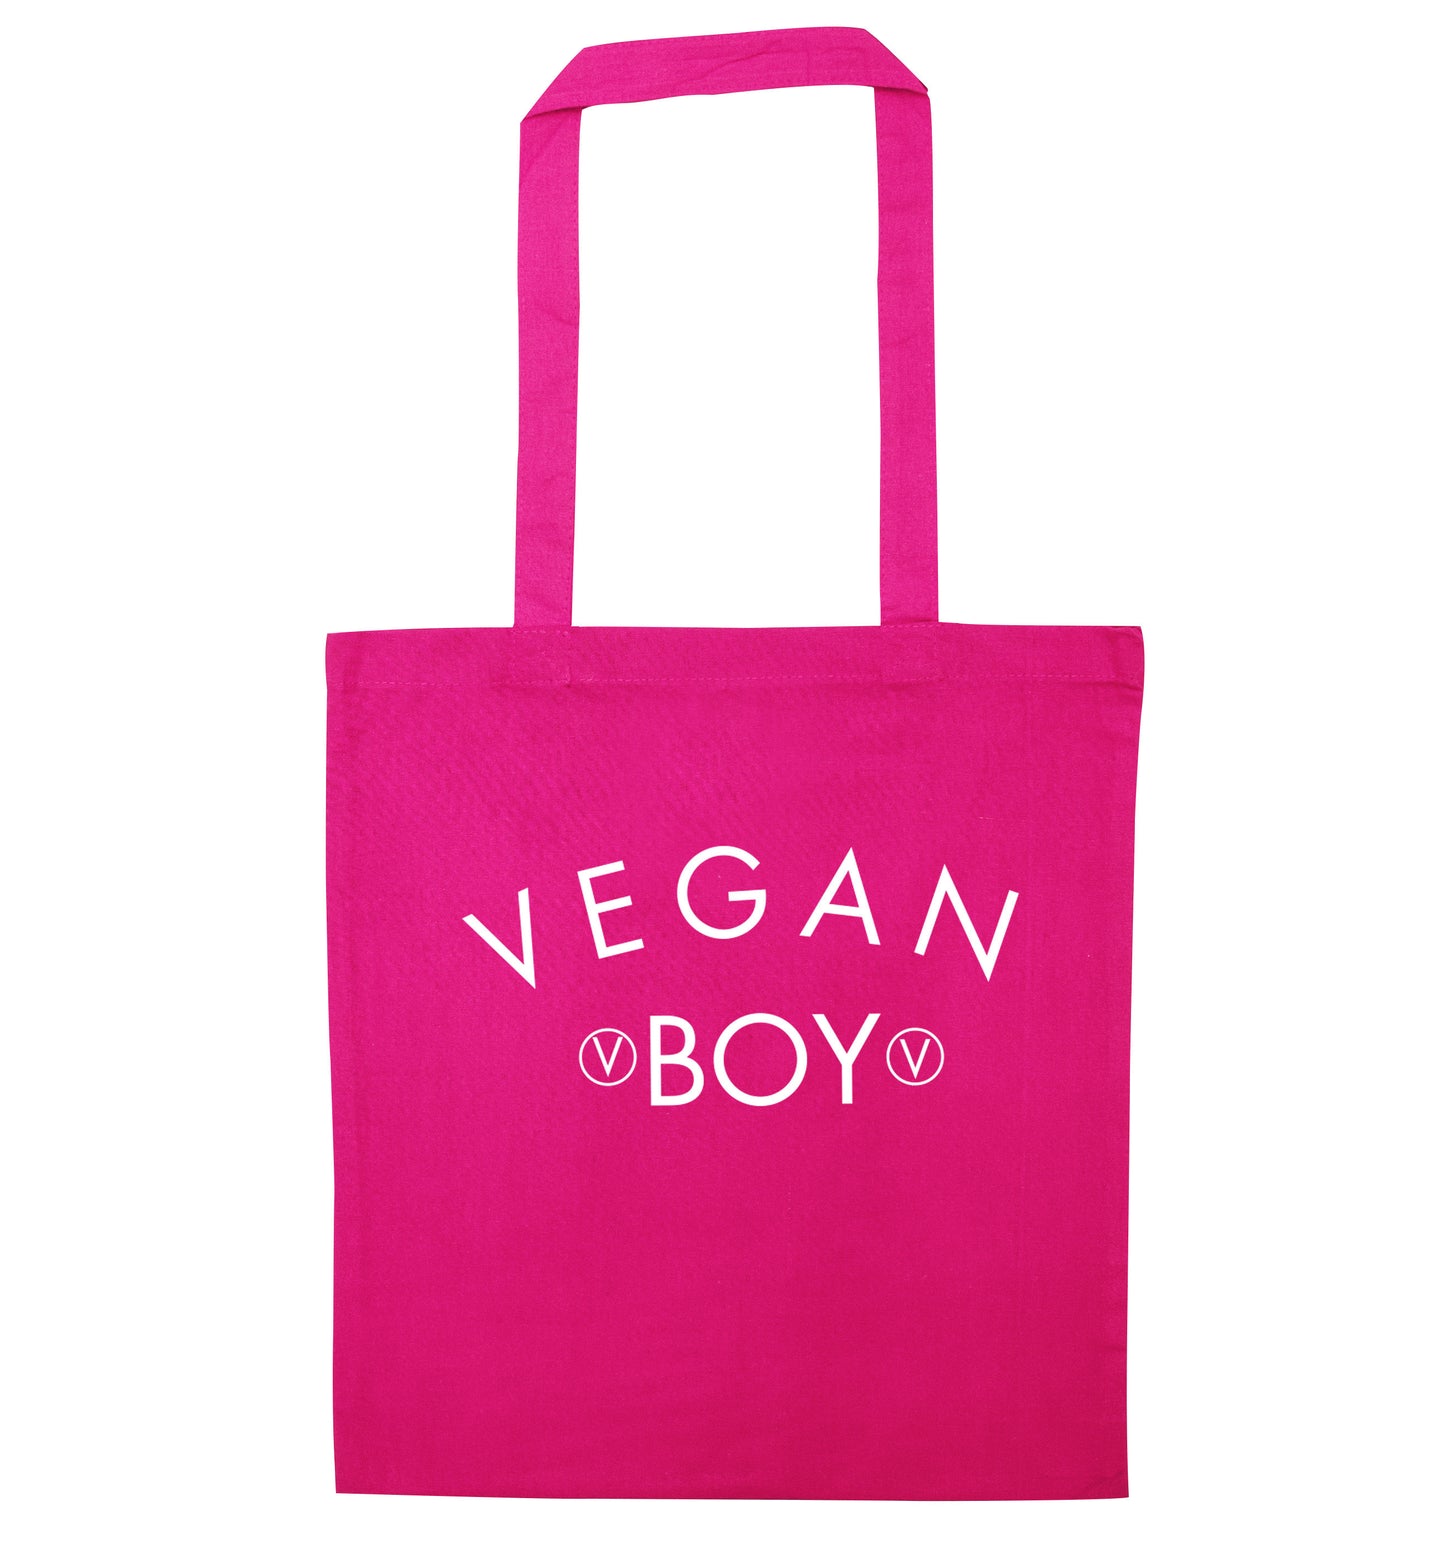 Vegan boy pink tote bag